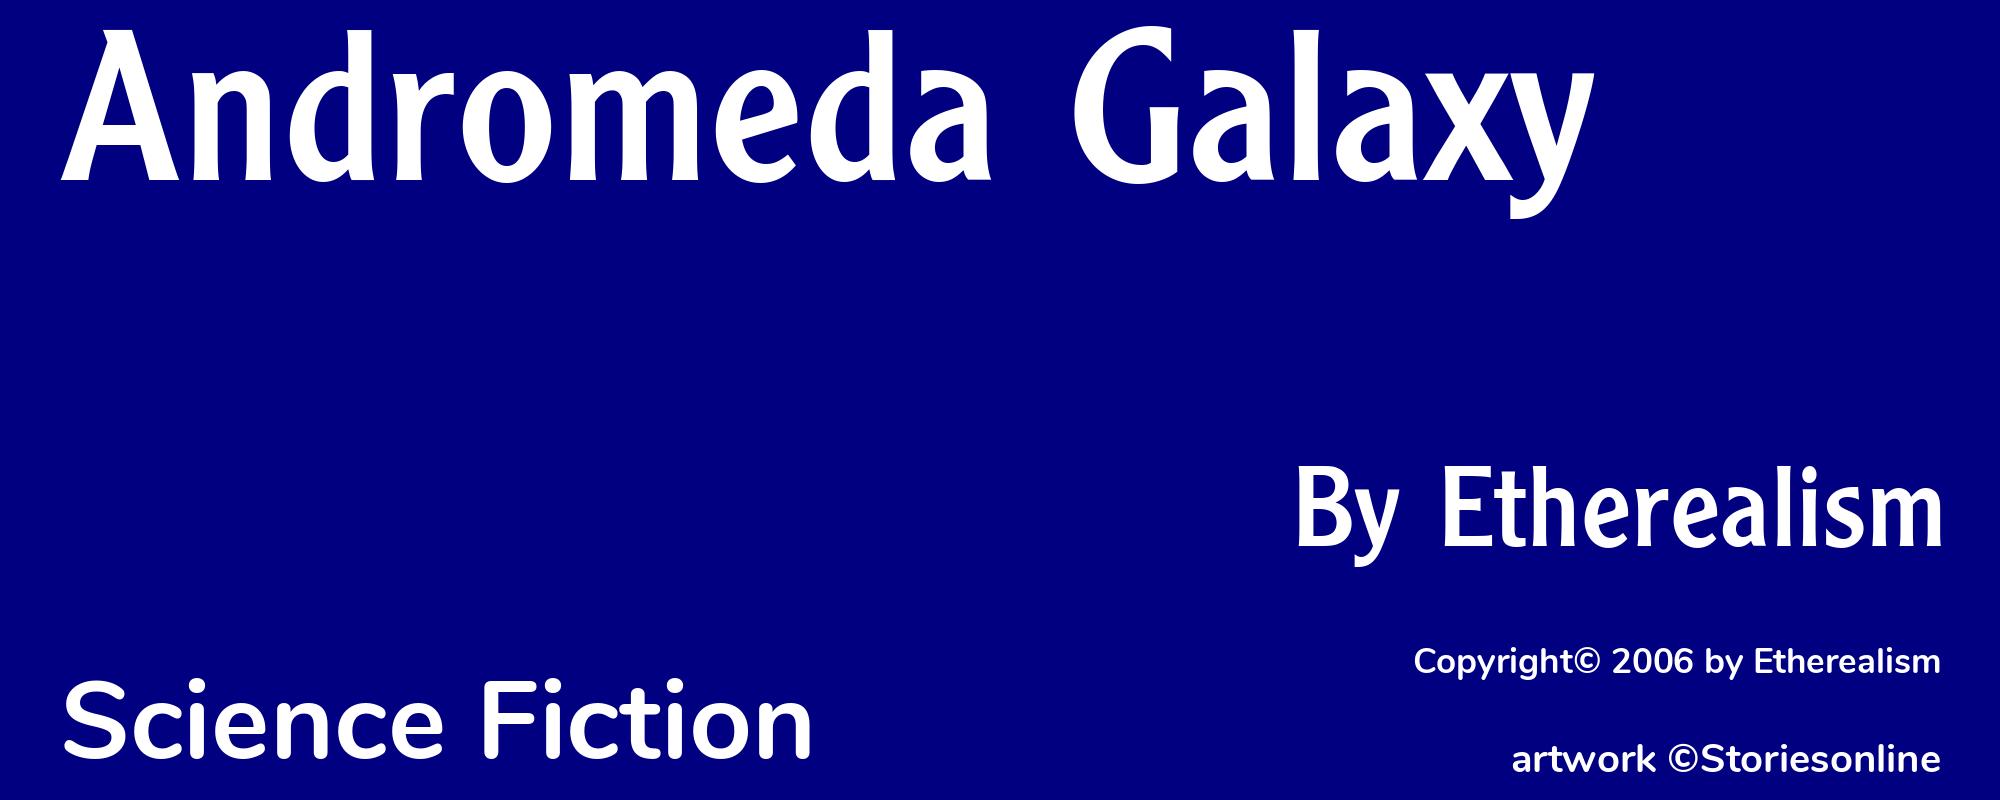 Andromeda Galaxy - Cover